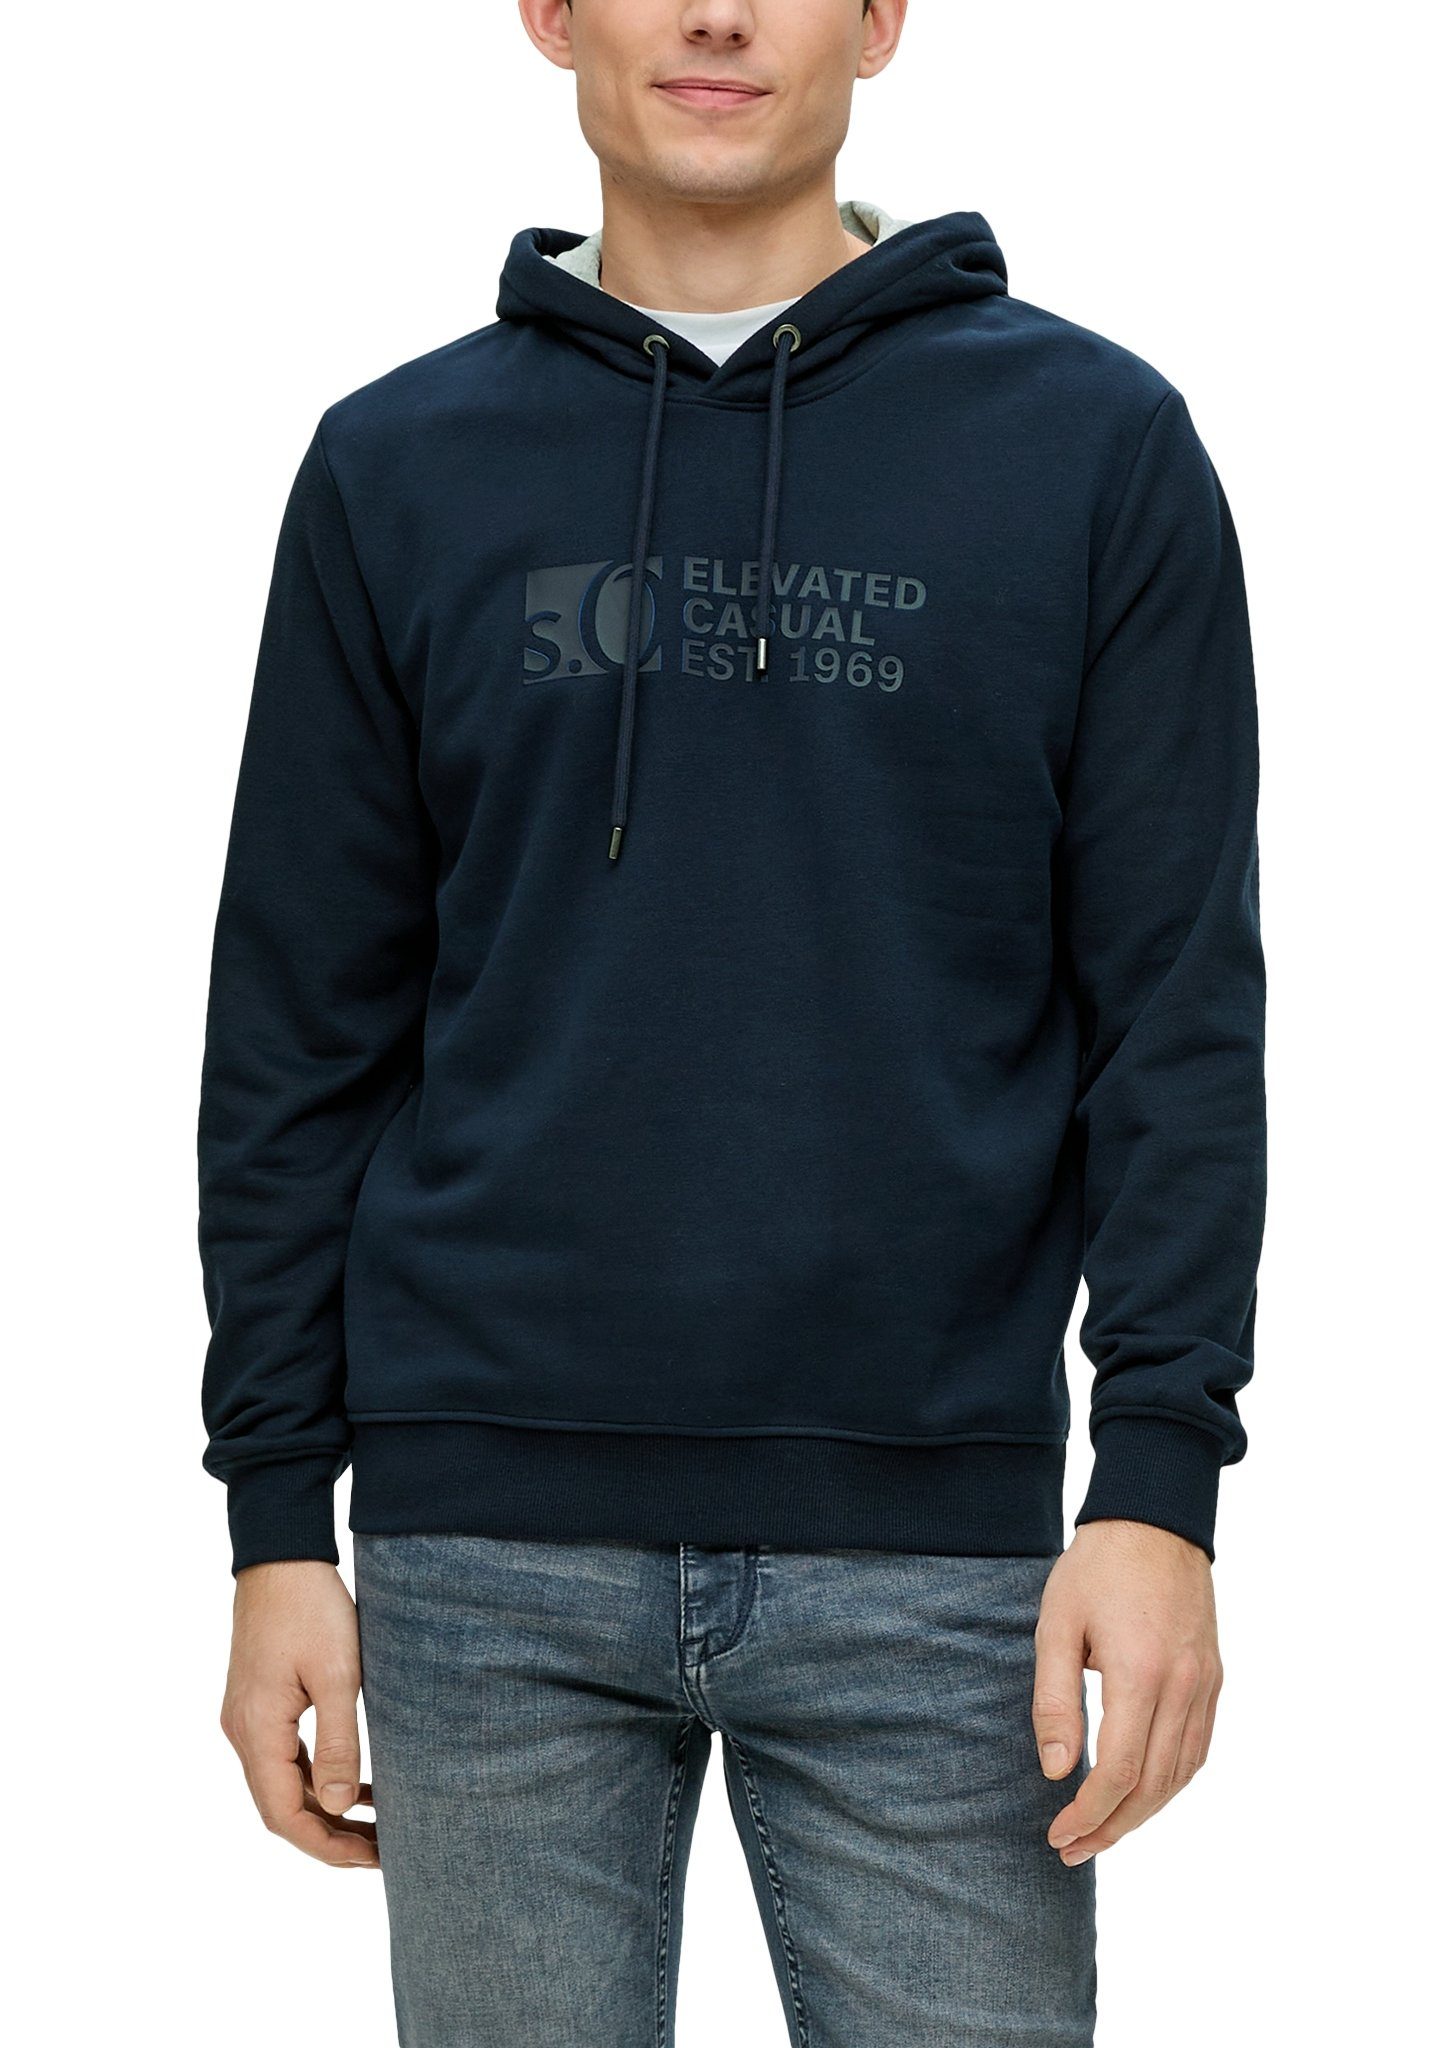 S.Oliver hoodie met printopdruk donkerblauw